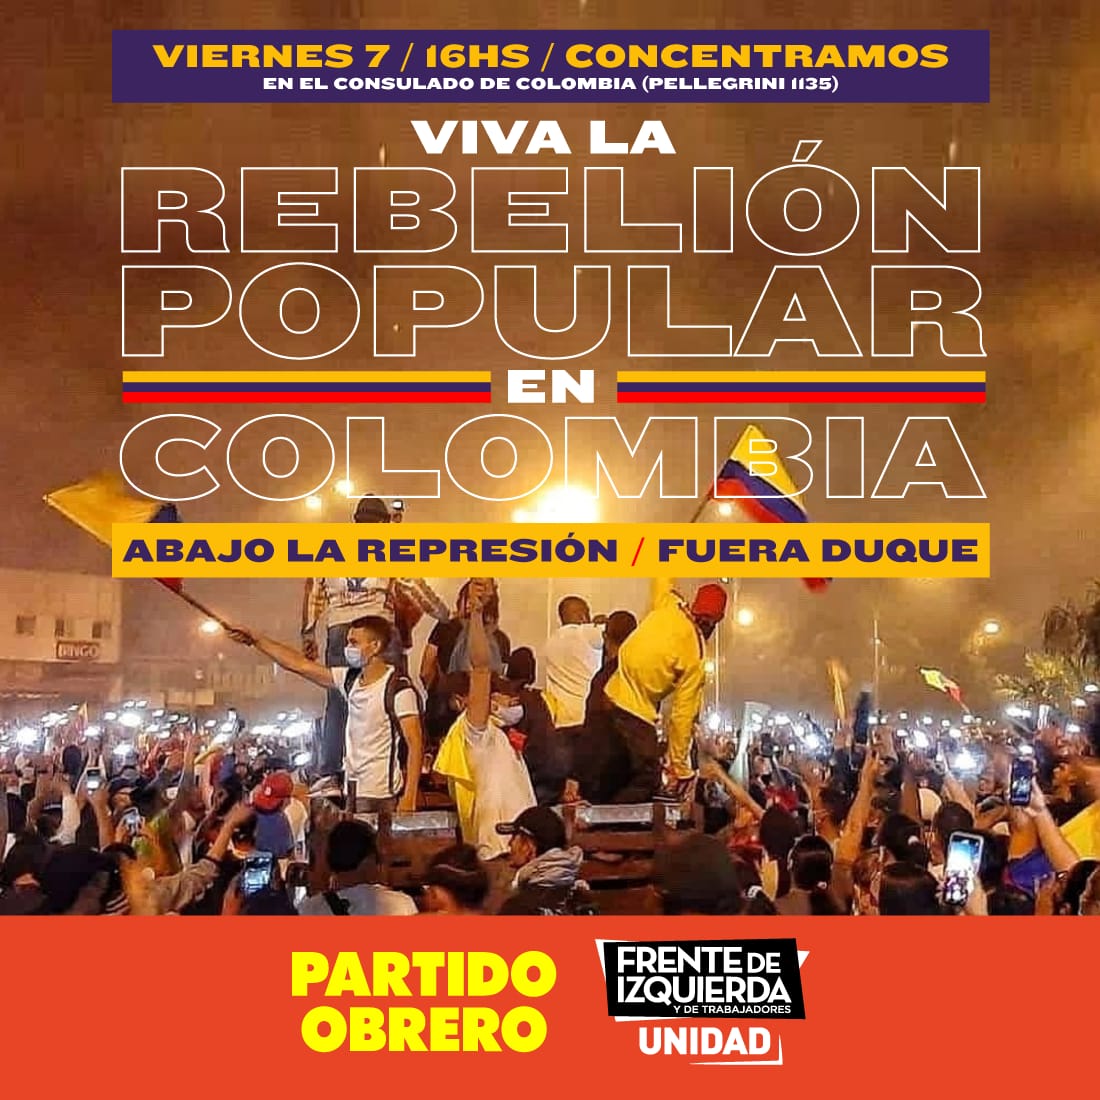 [Colombia] Viernes 16h acto en apoyo a la rebelión popular y contra la represión